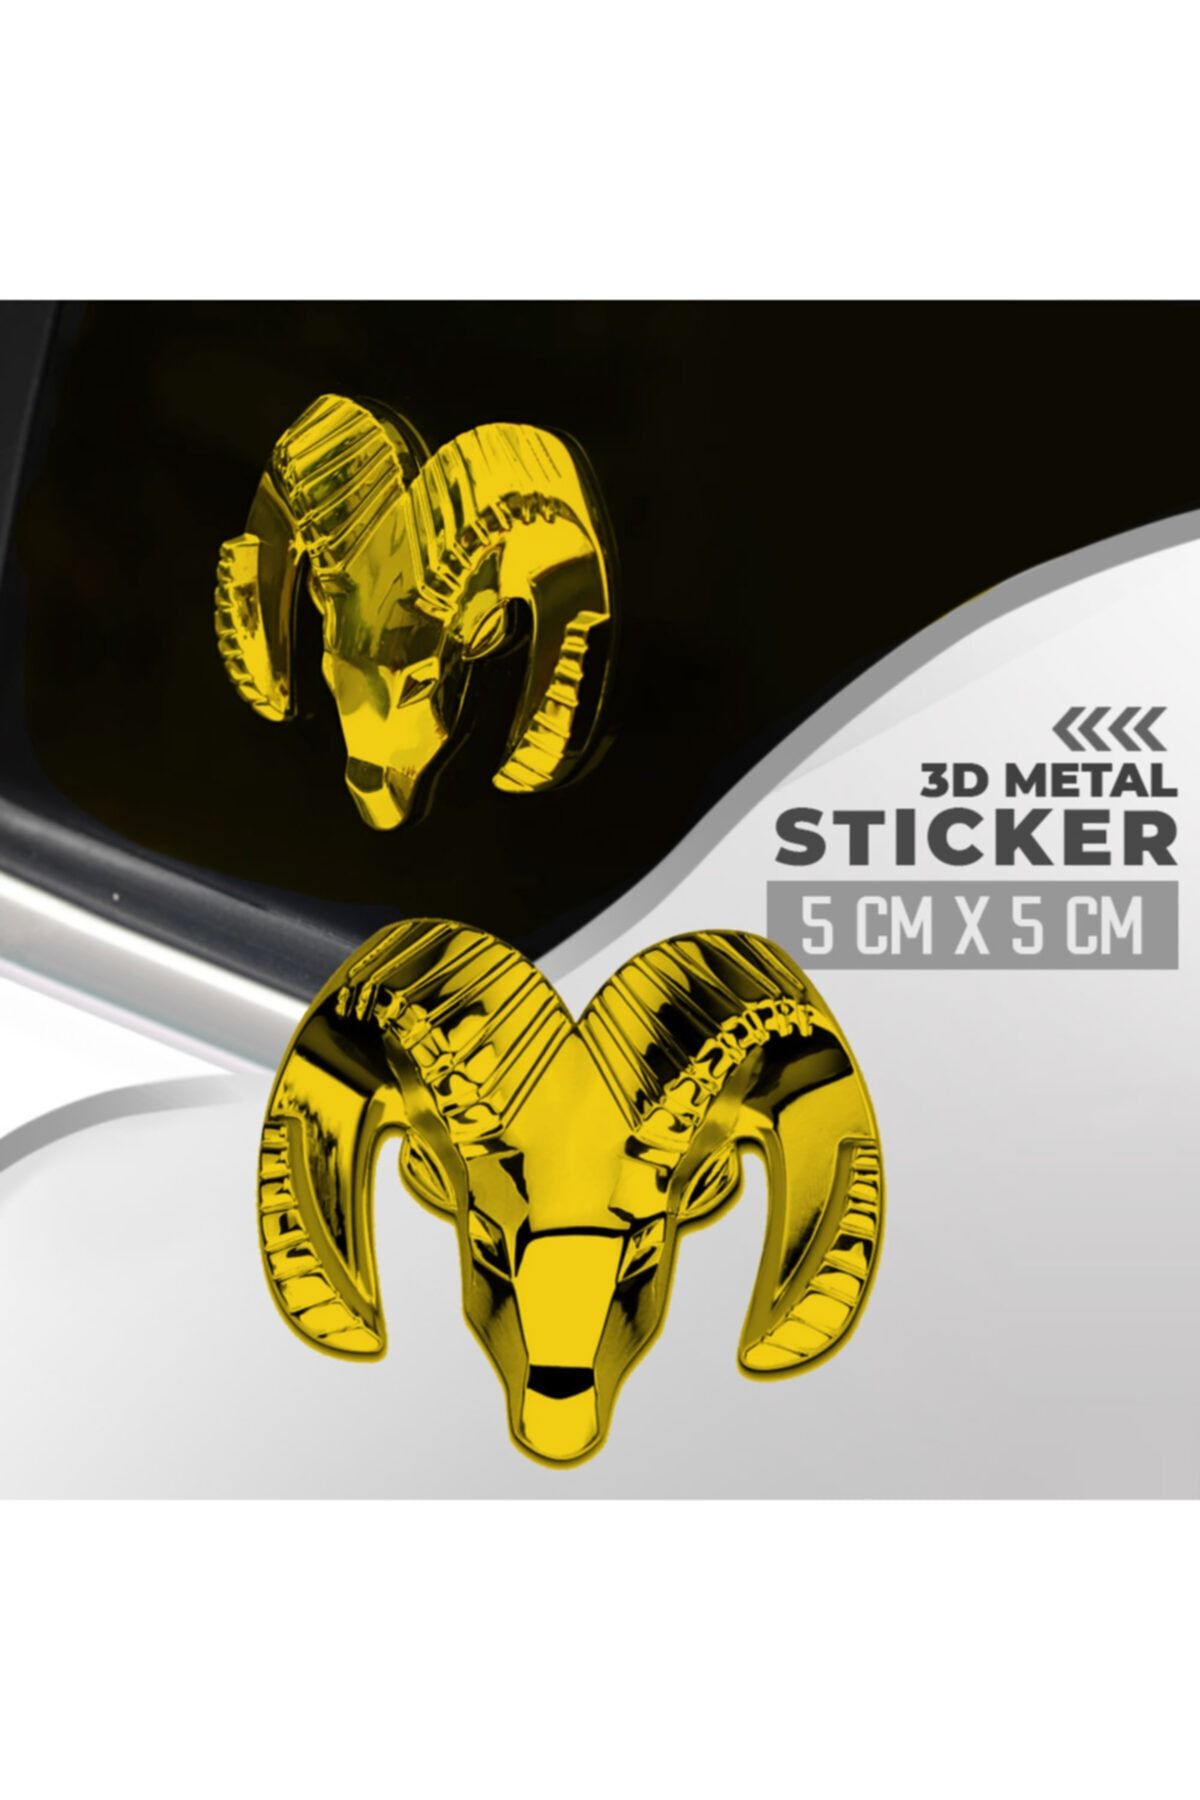 C9 Dodge Altın Renk Paslanmaz Metal Arma Sticker Yapışkanlı 5cm X 5cm